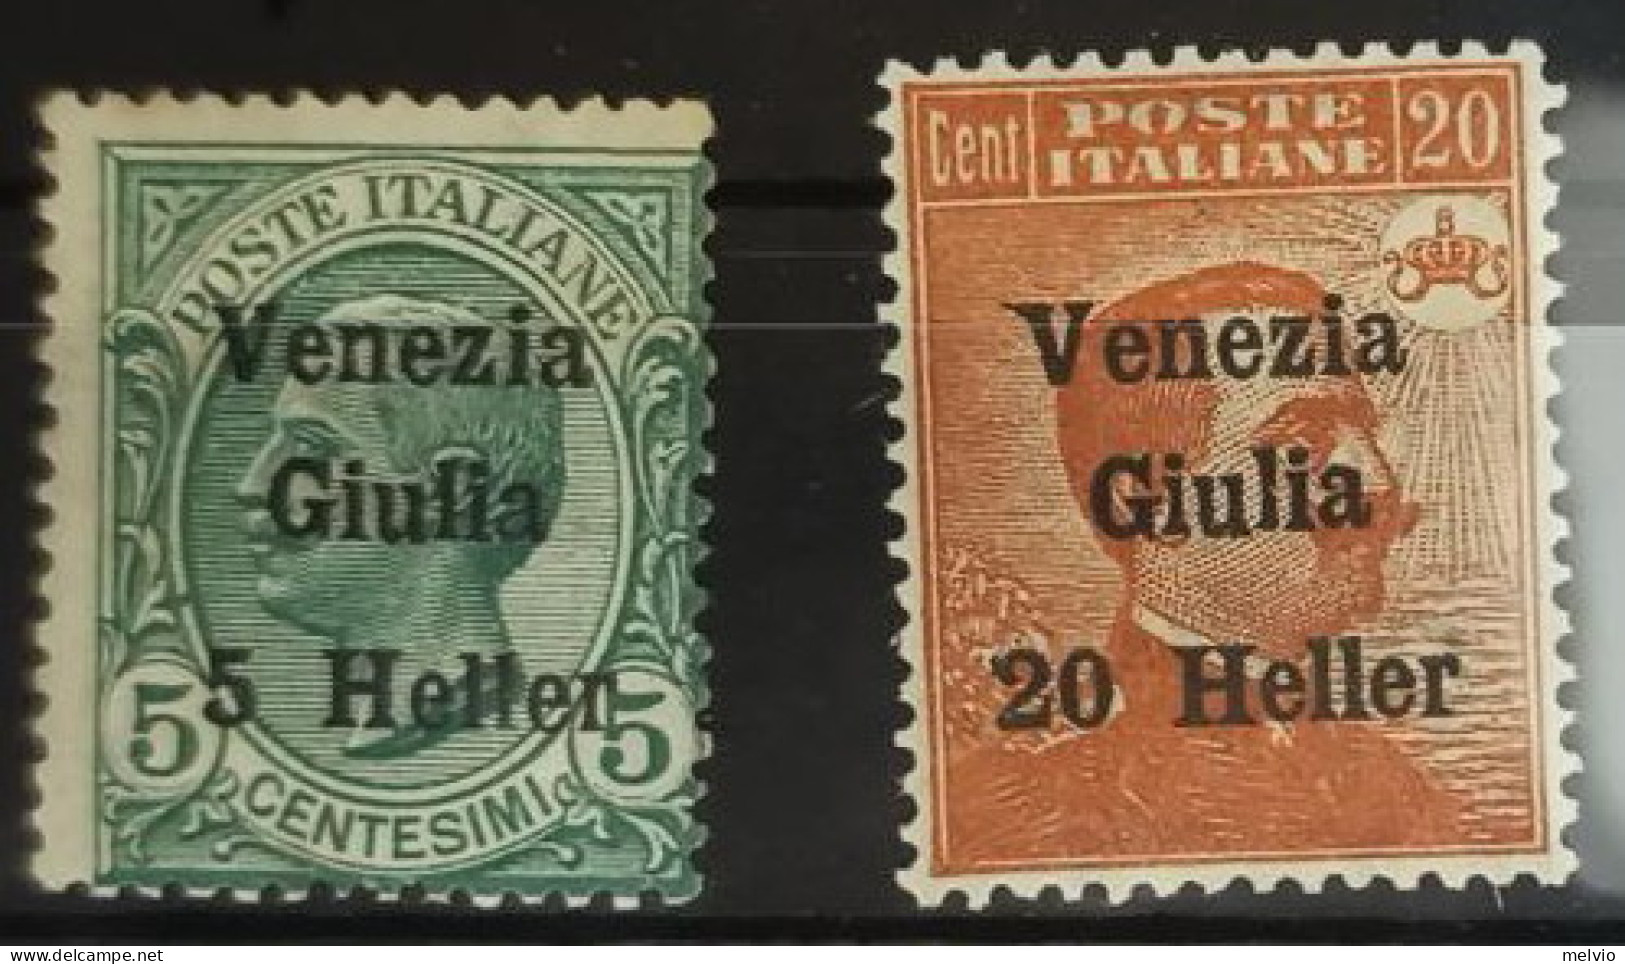 Venezia Giulia-(**/*=mixed) - Venezia Giulia